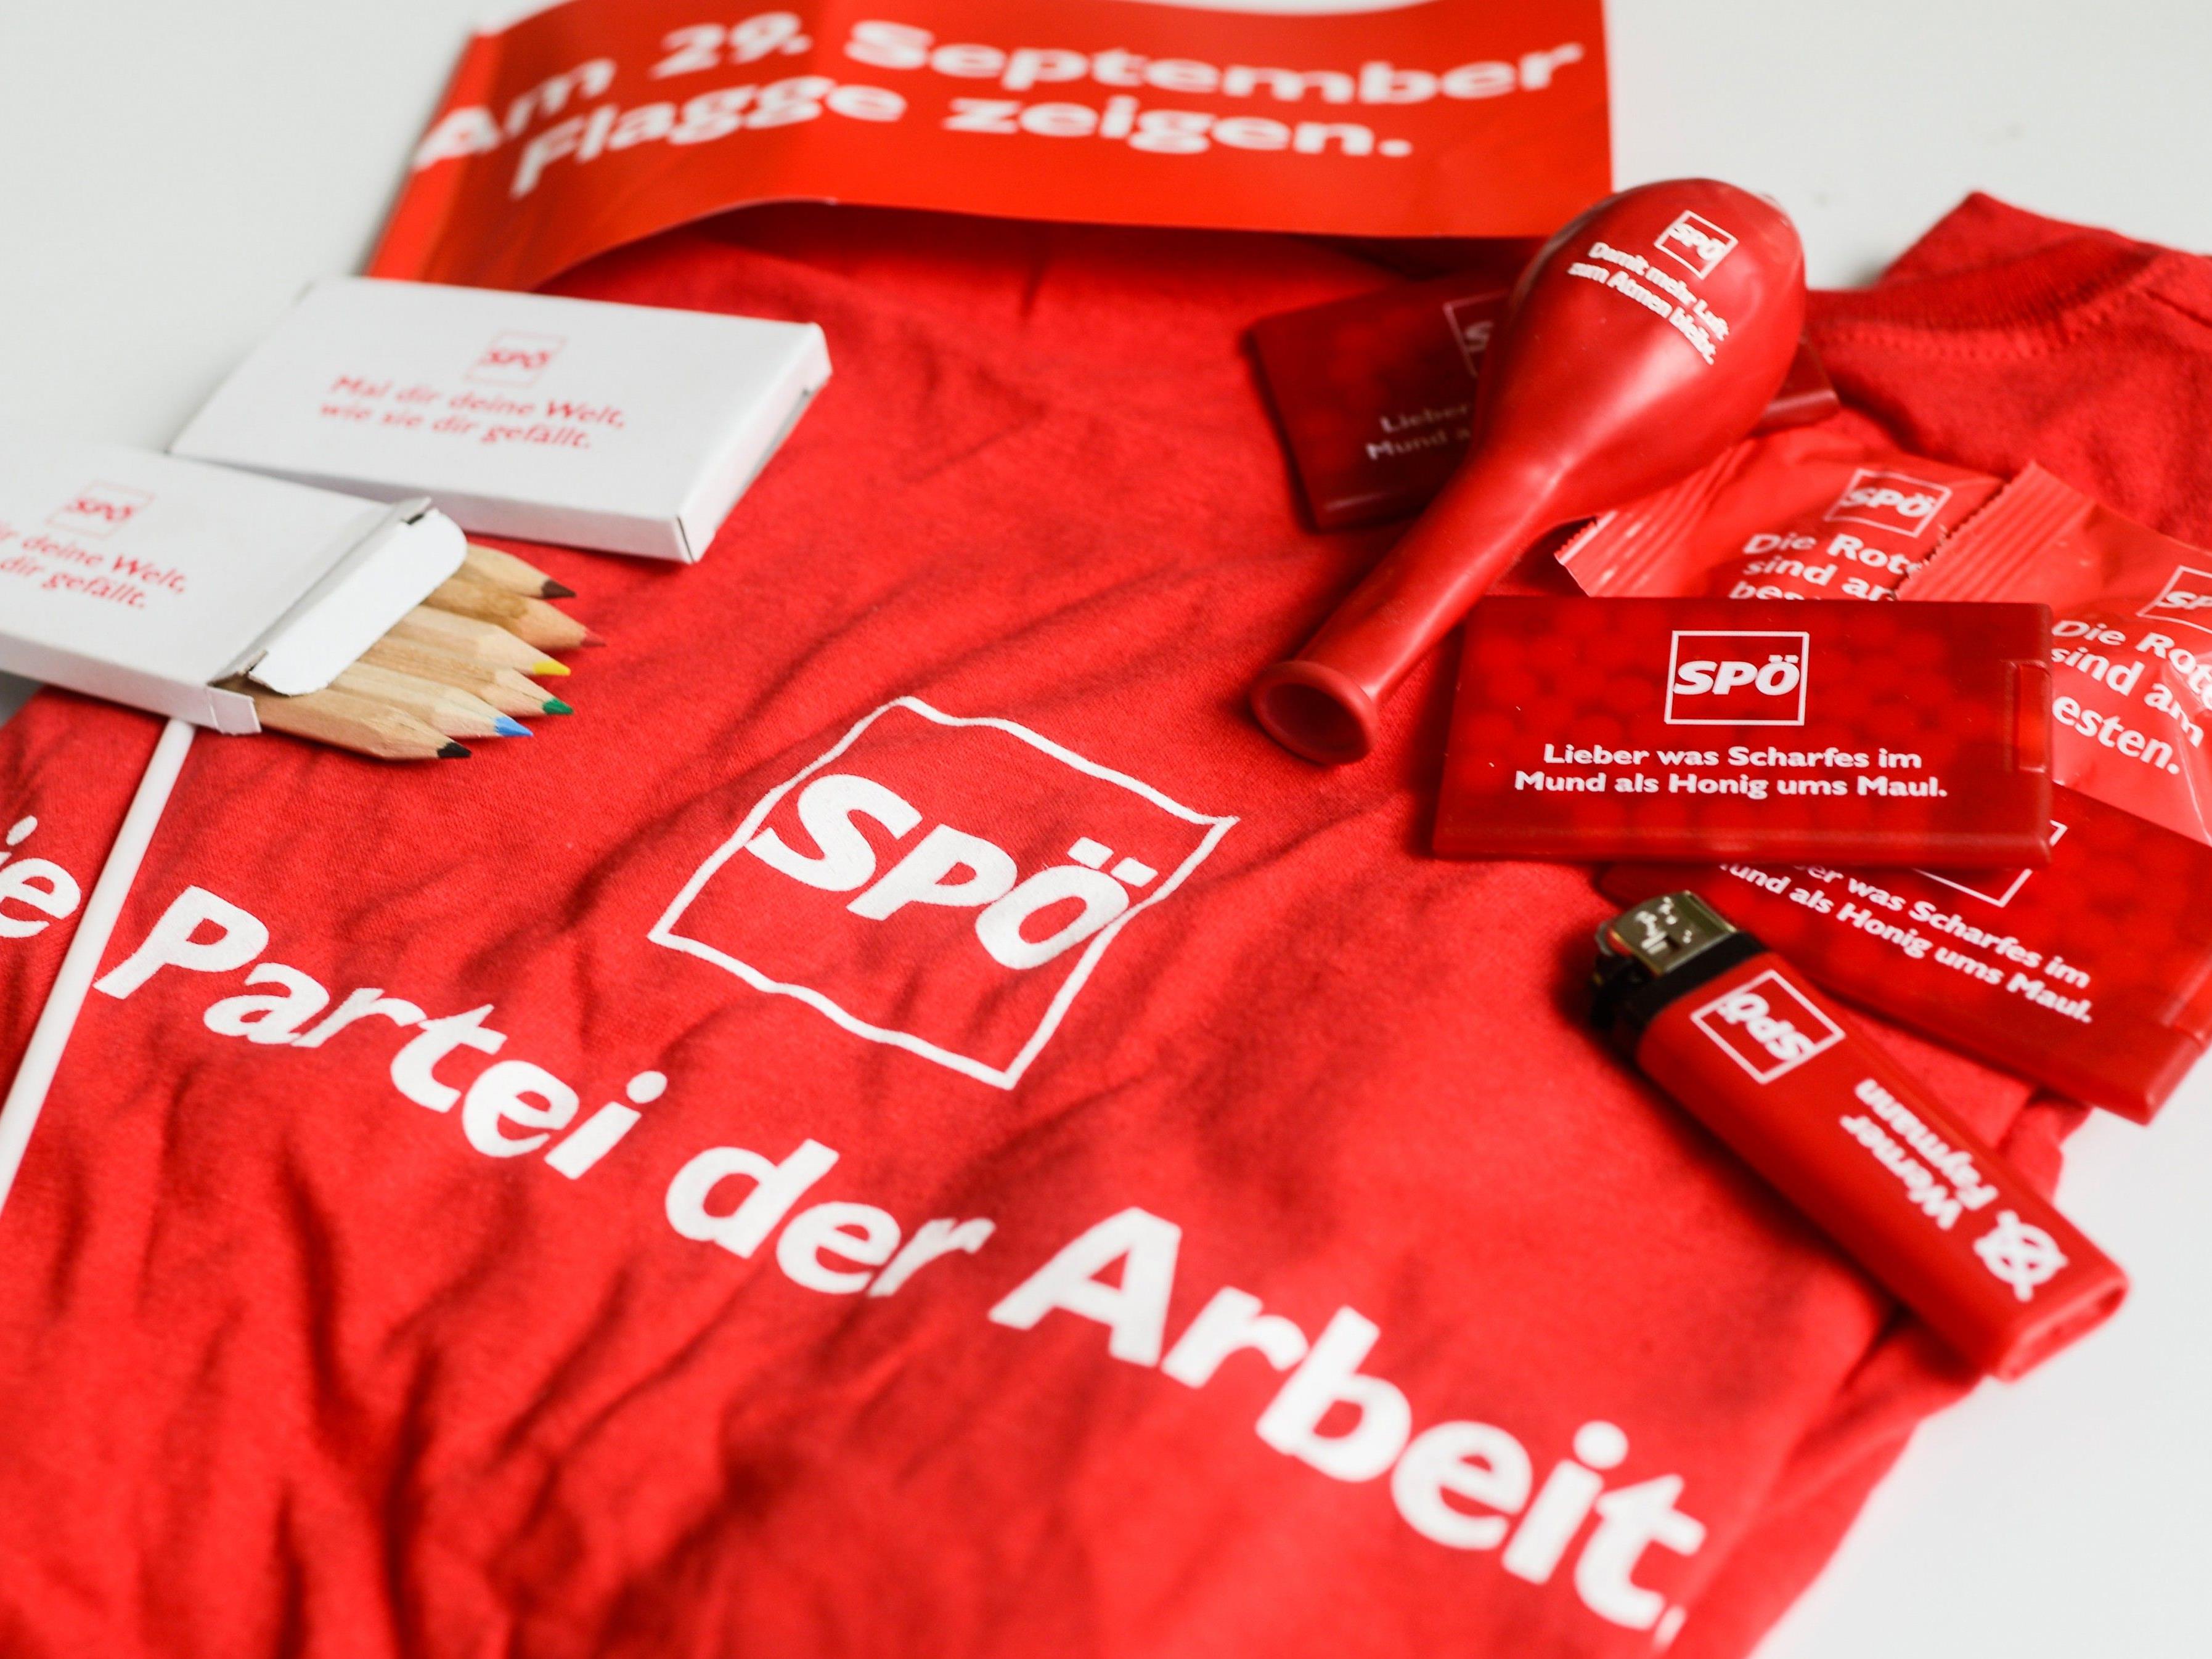 Die Wiener SPÖ verteilt im Wahlkampf Wahlgeschenke und macht Hausbesuche